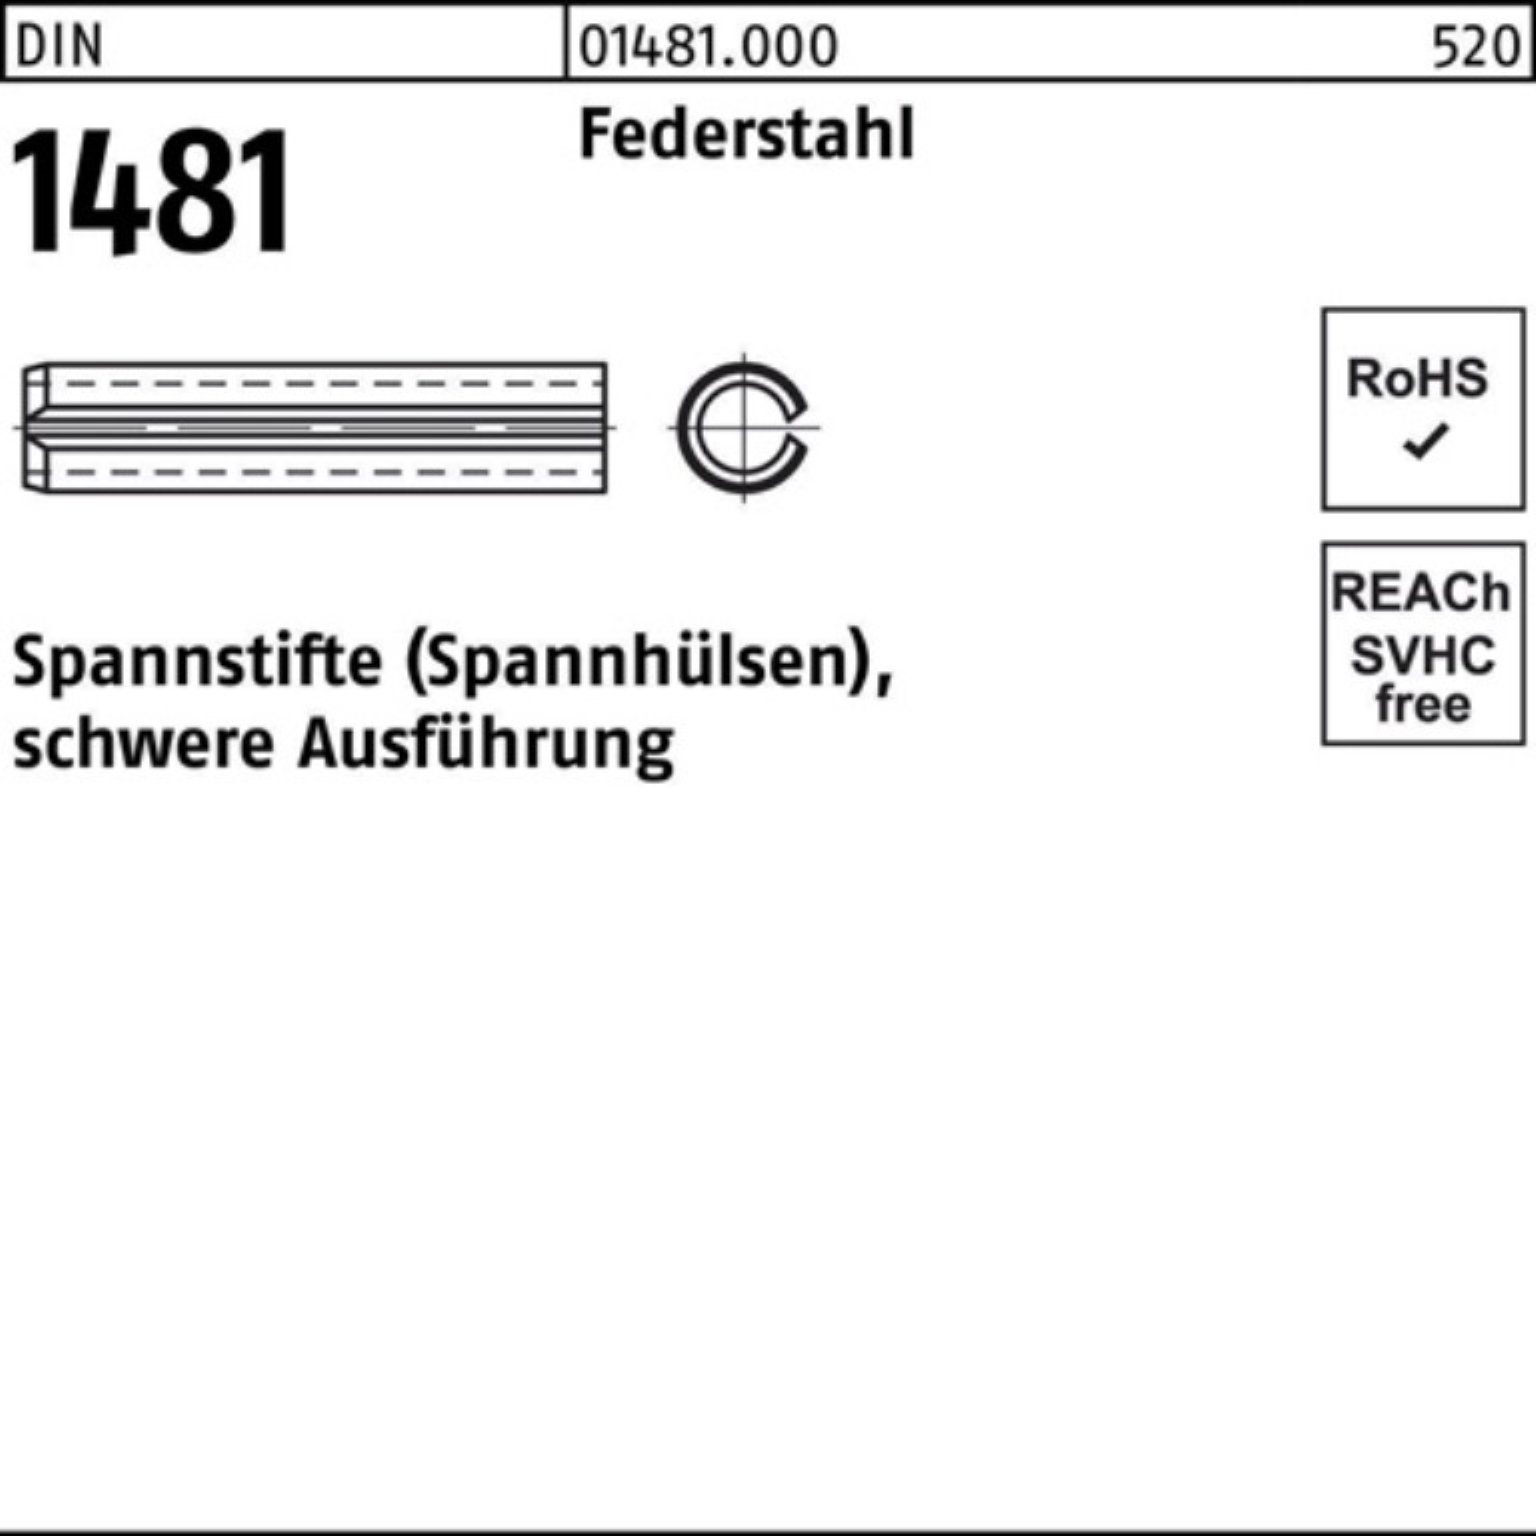 Reyher Spannstift 100er Pack Spannstift DIN 1481 10x 55 Federstahl schwere Ausführung 1